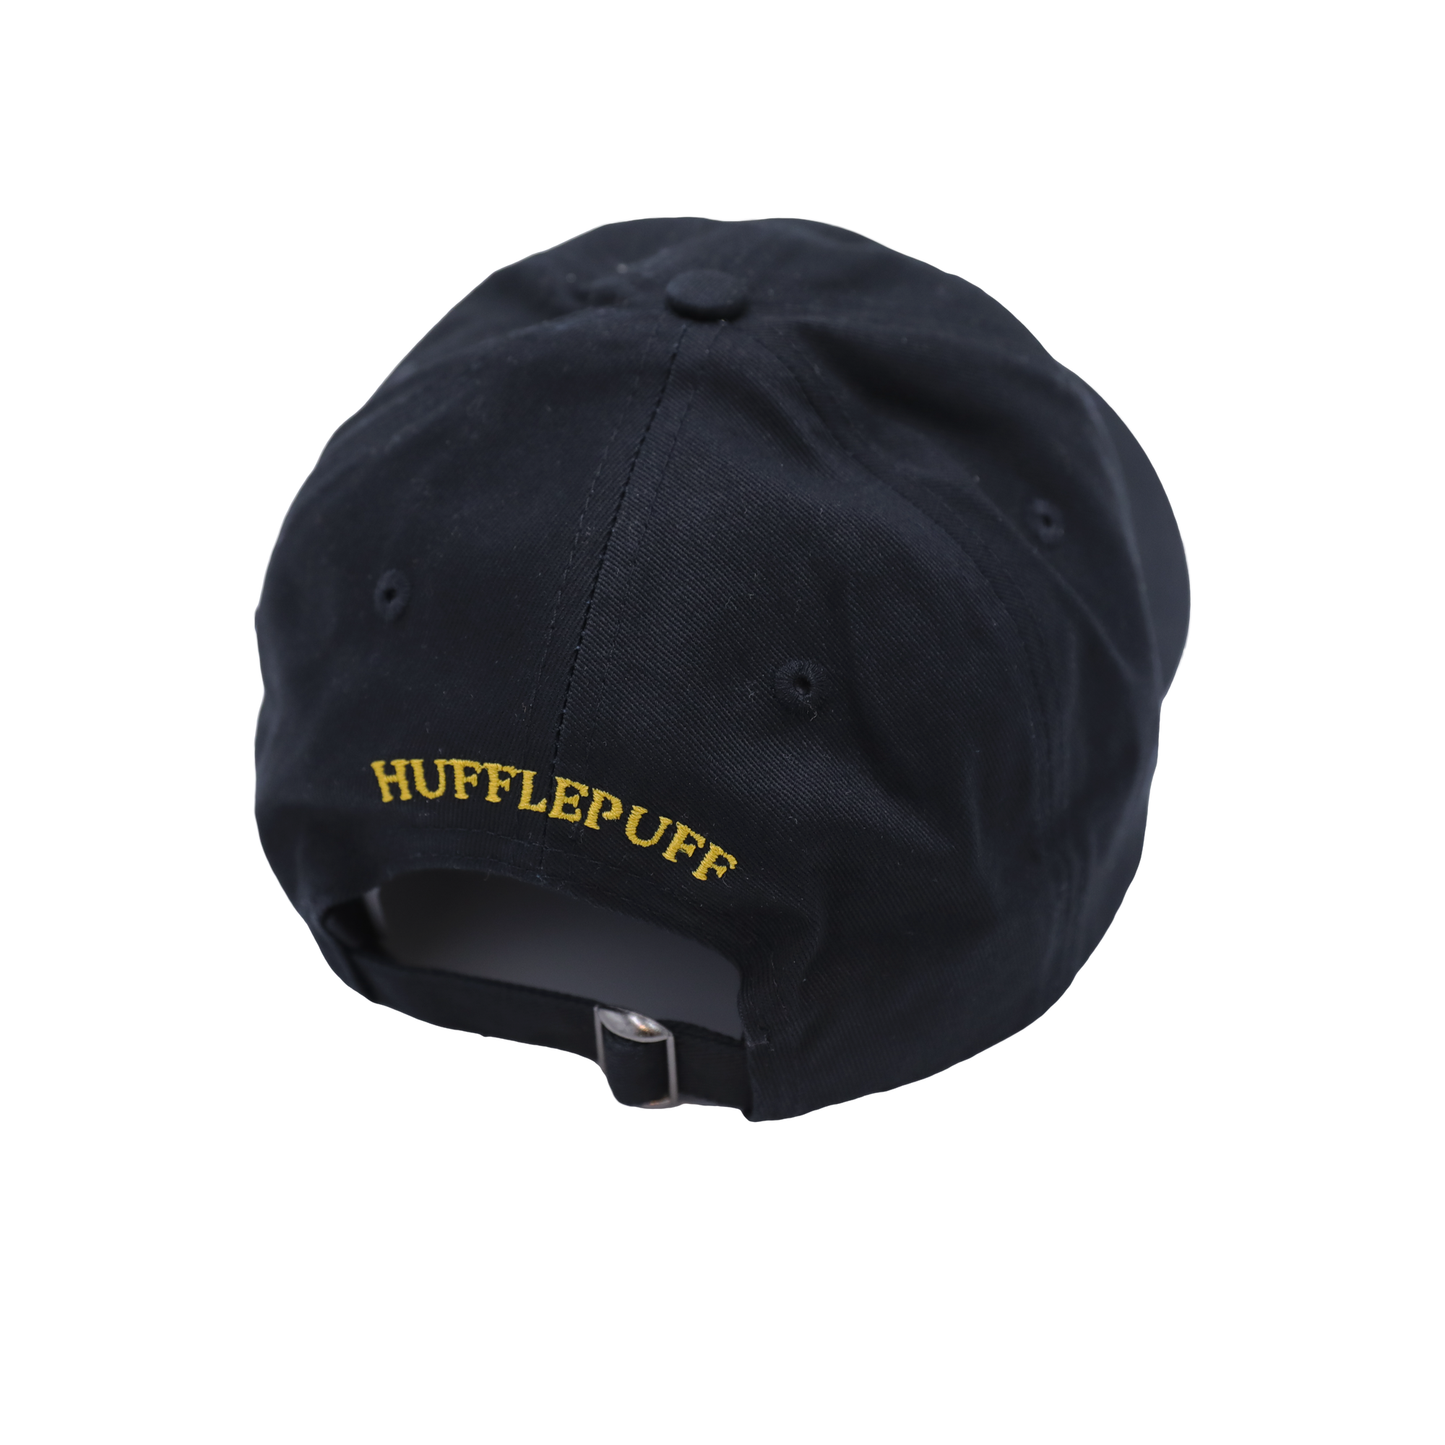 Hufflepuff™ Baseball Cap